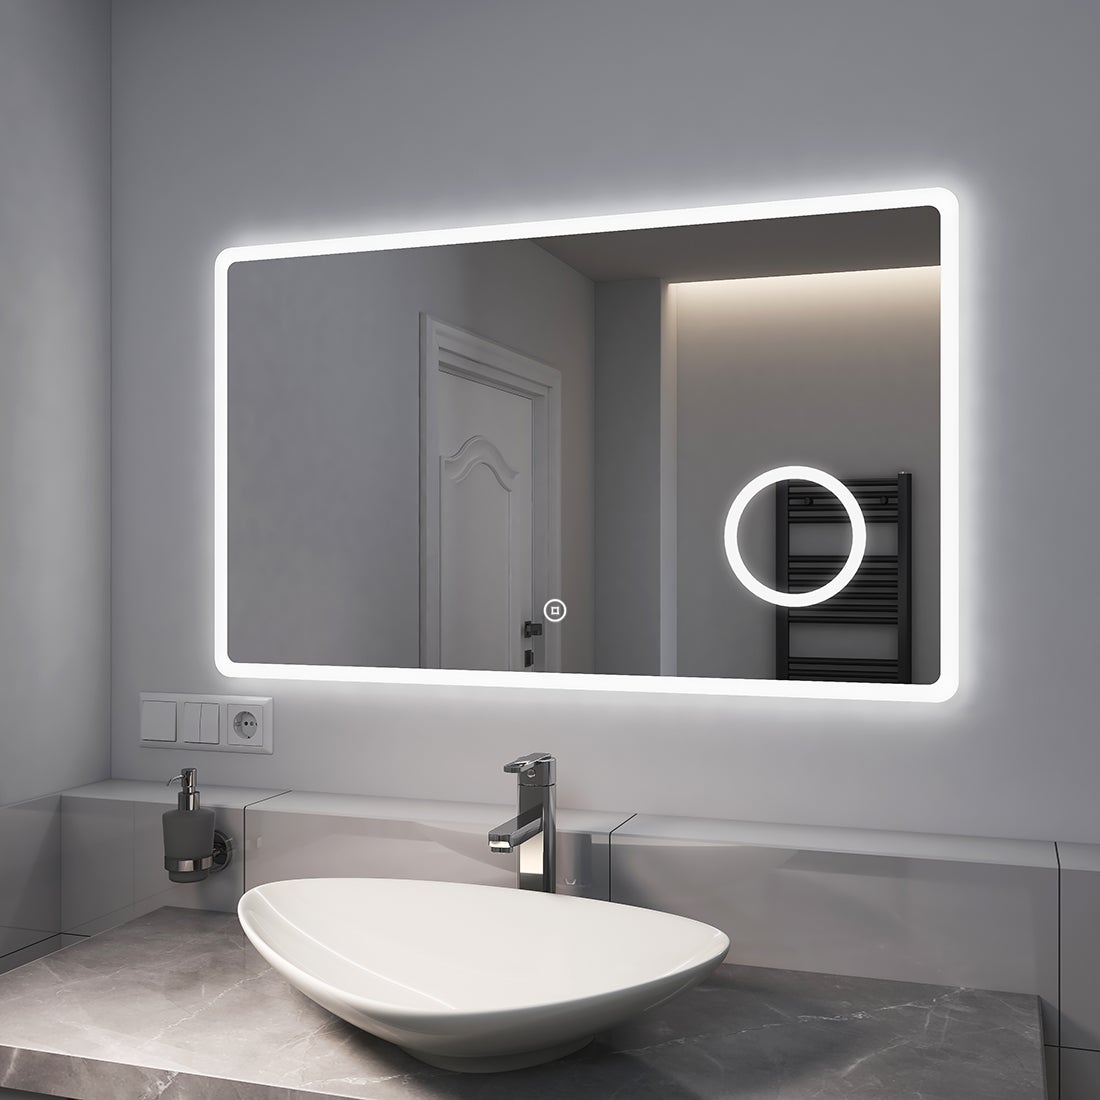 EMKE Badspiegel mit 3-fache Vergrößerung, LED Beleuchtung, 100x60cm, Kaltweißes Licht, Touch